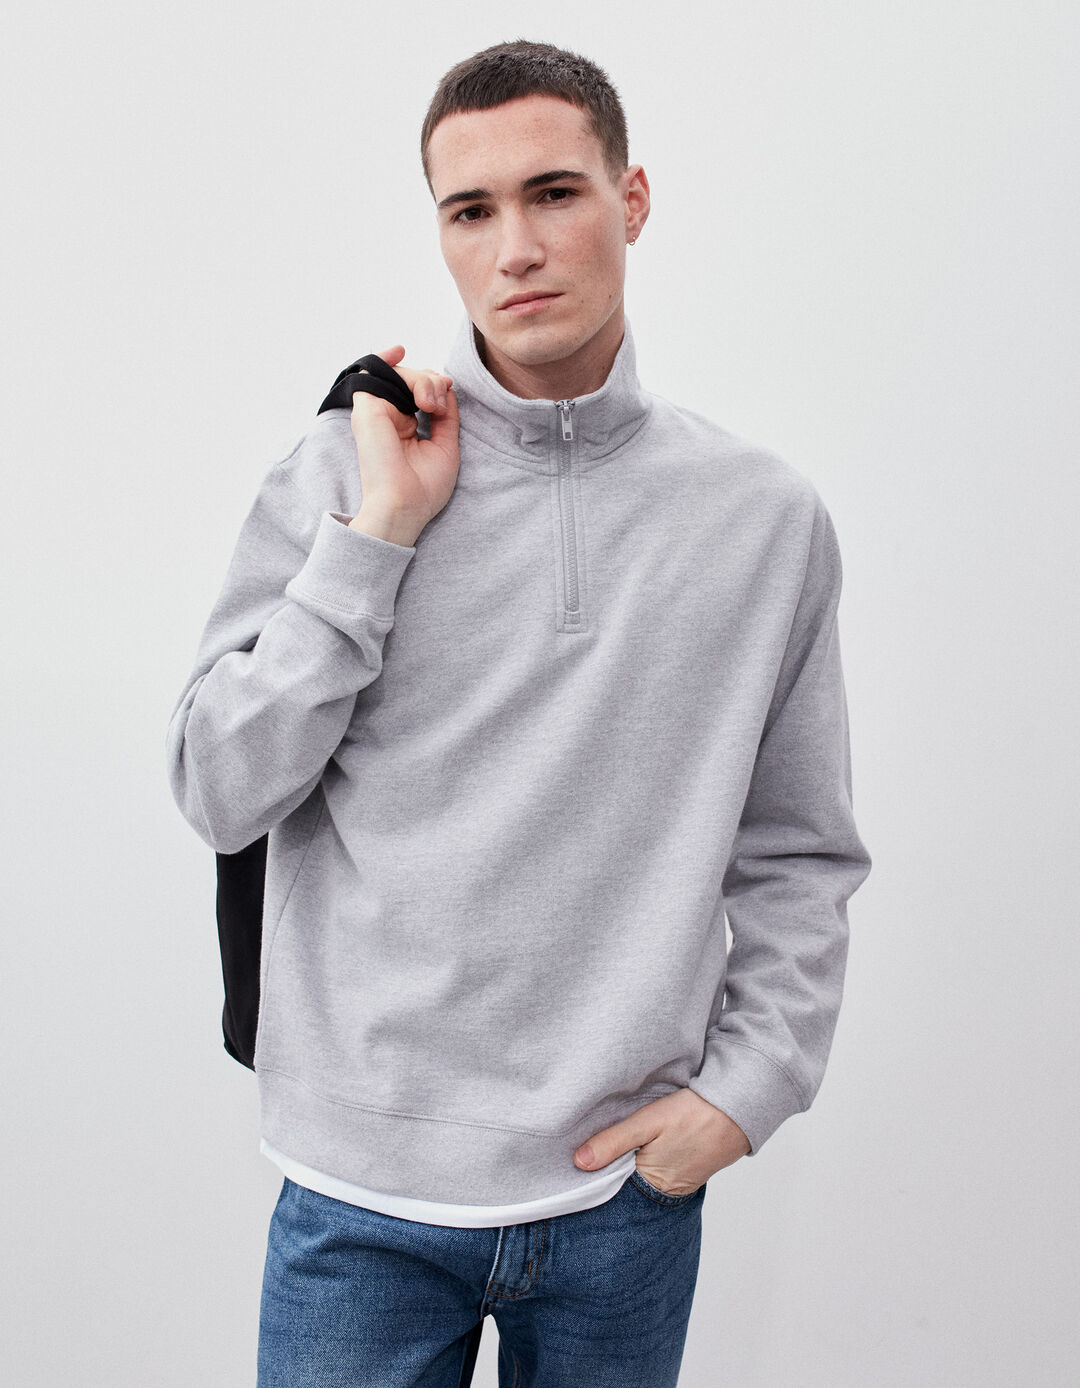 Zip-up Fleece Sweatshirt, Men, Light Gray